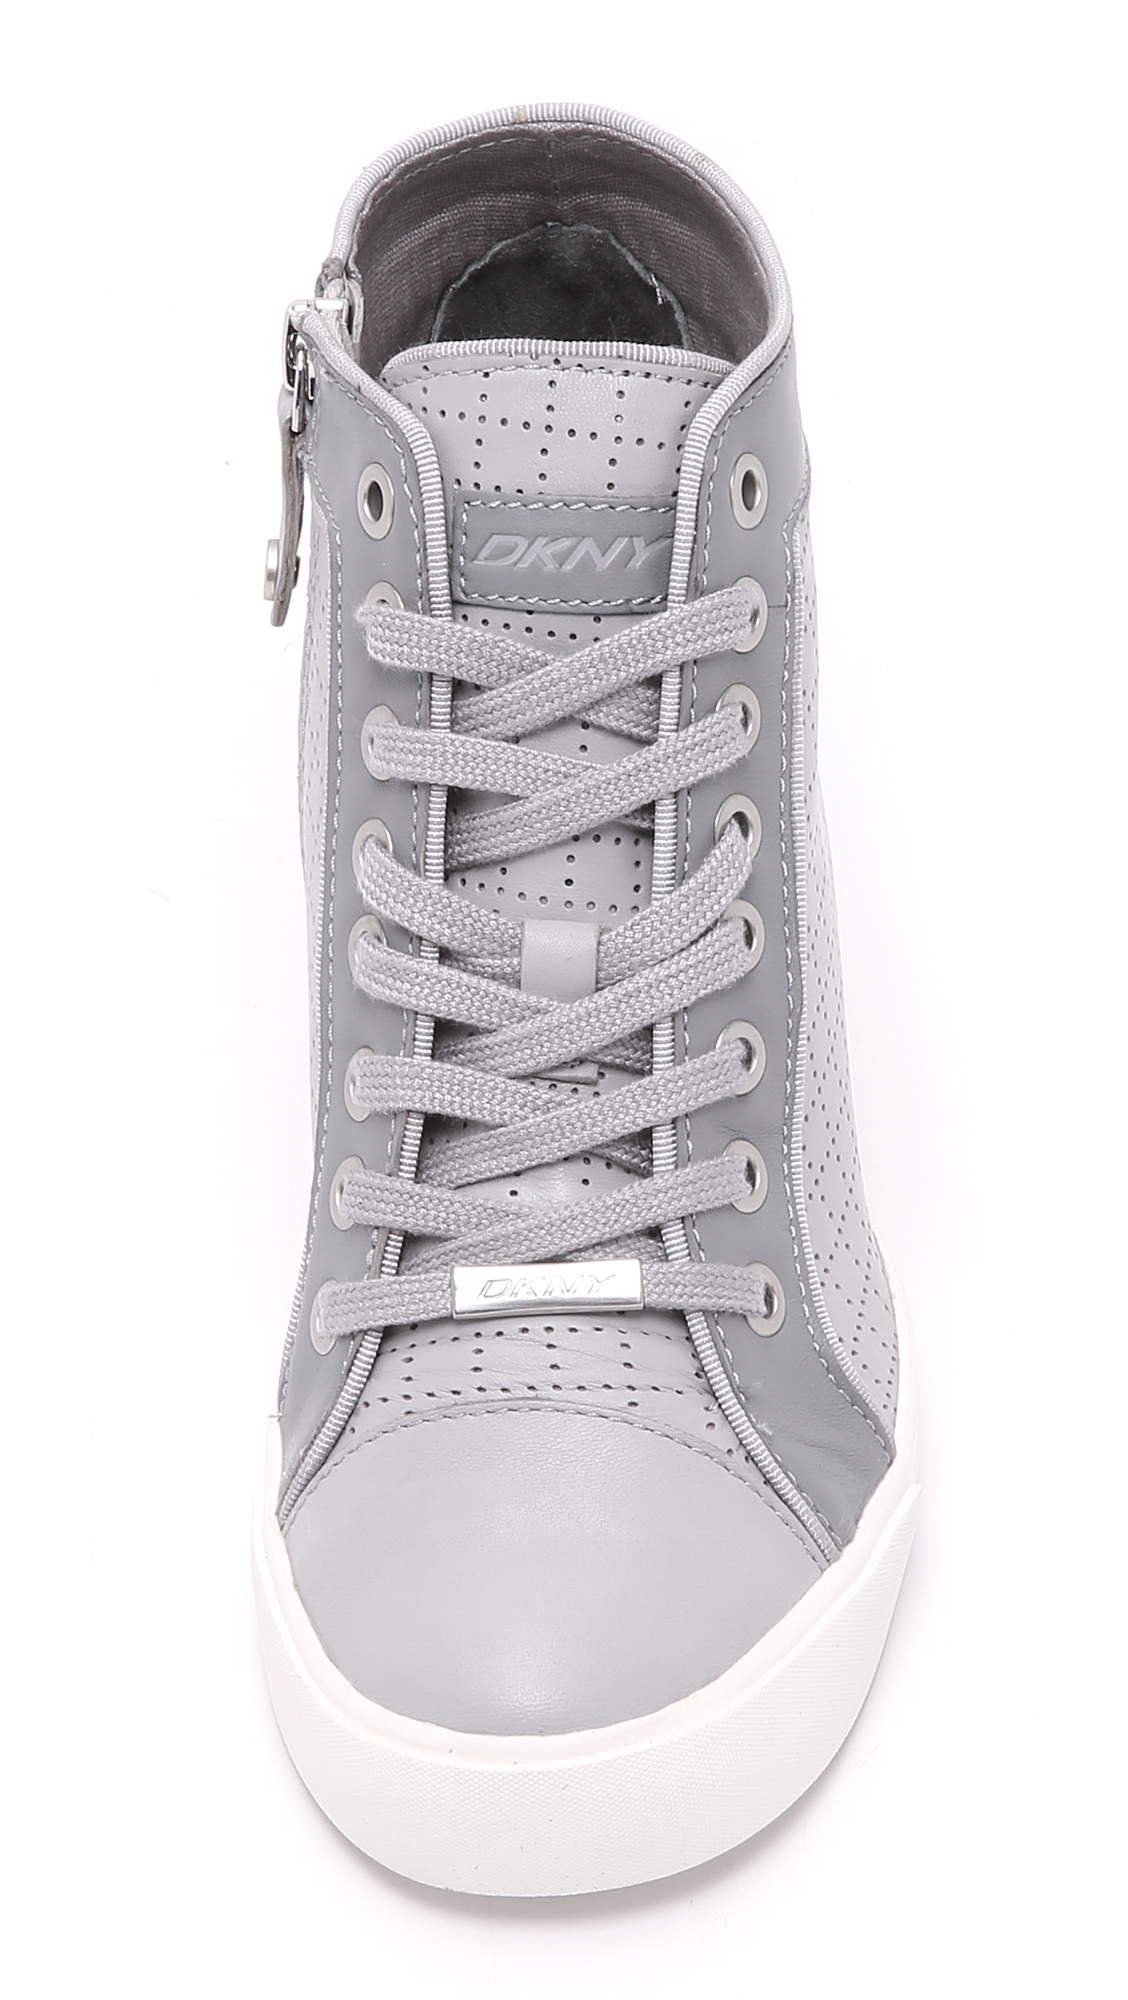 wedge sneakers gray